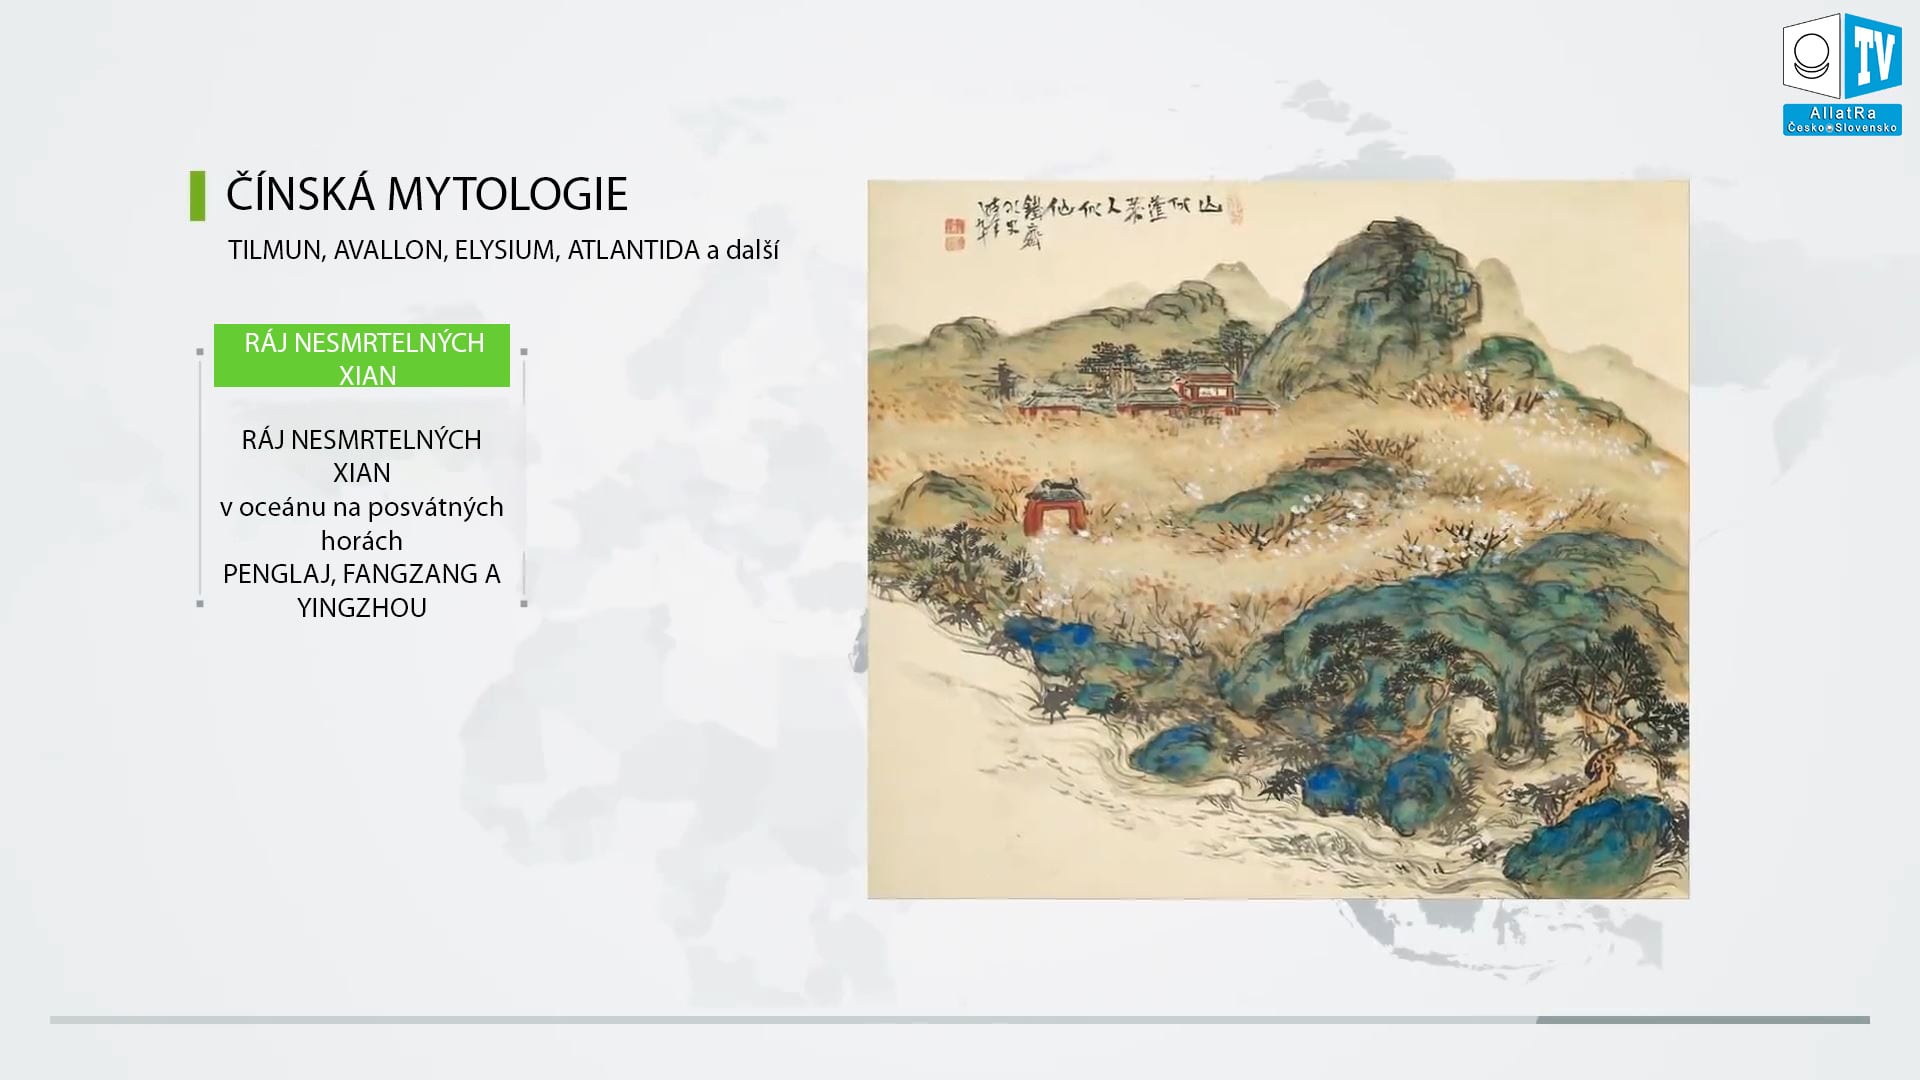 Čínská mytologie. Ráj nesmrtelných